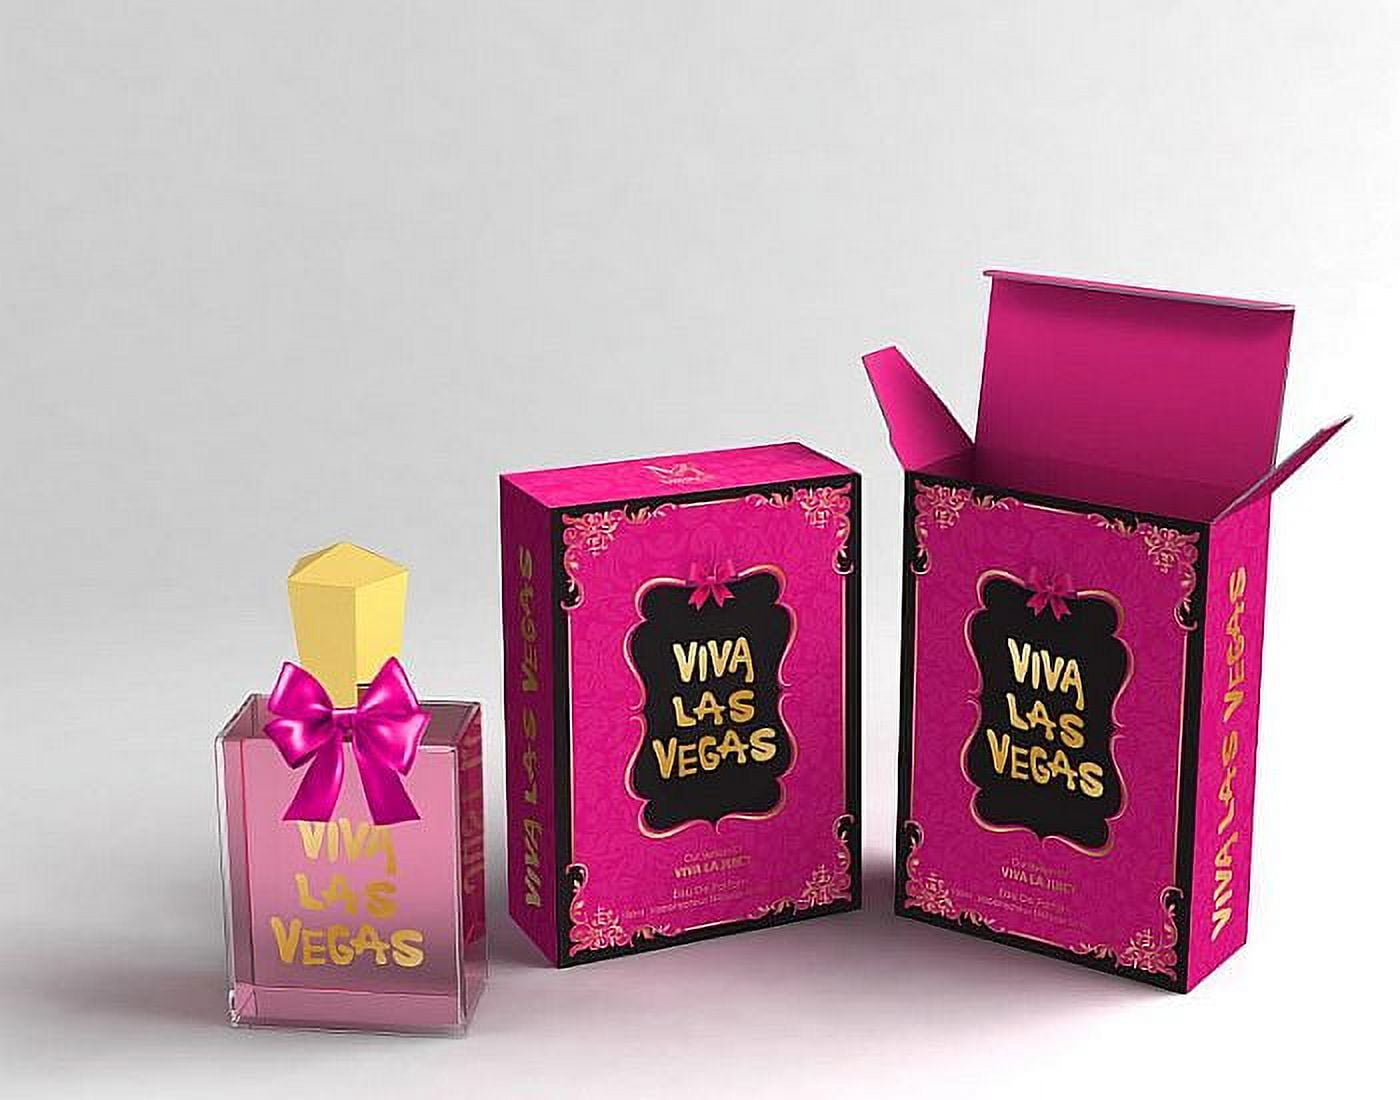 Olympiada, Perfume for Women by Secret Plus, 3.4 Oz - 100 ml / Eau De  Parfum Natural Spray Vaporizateur